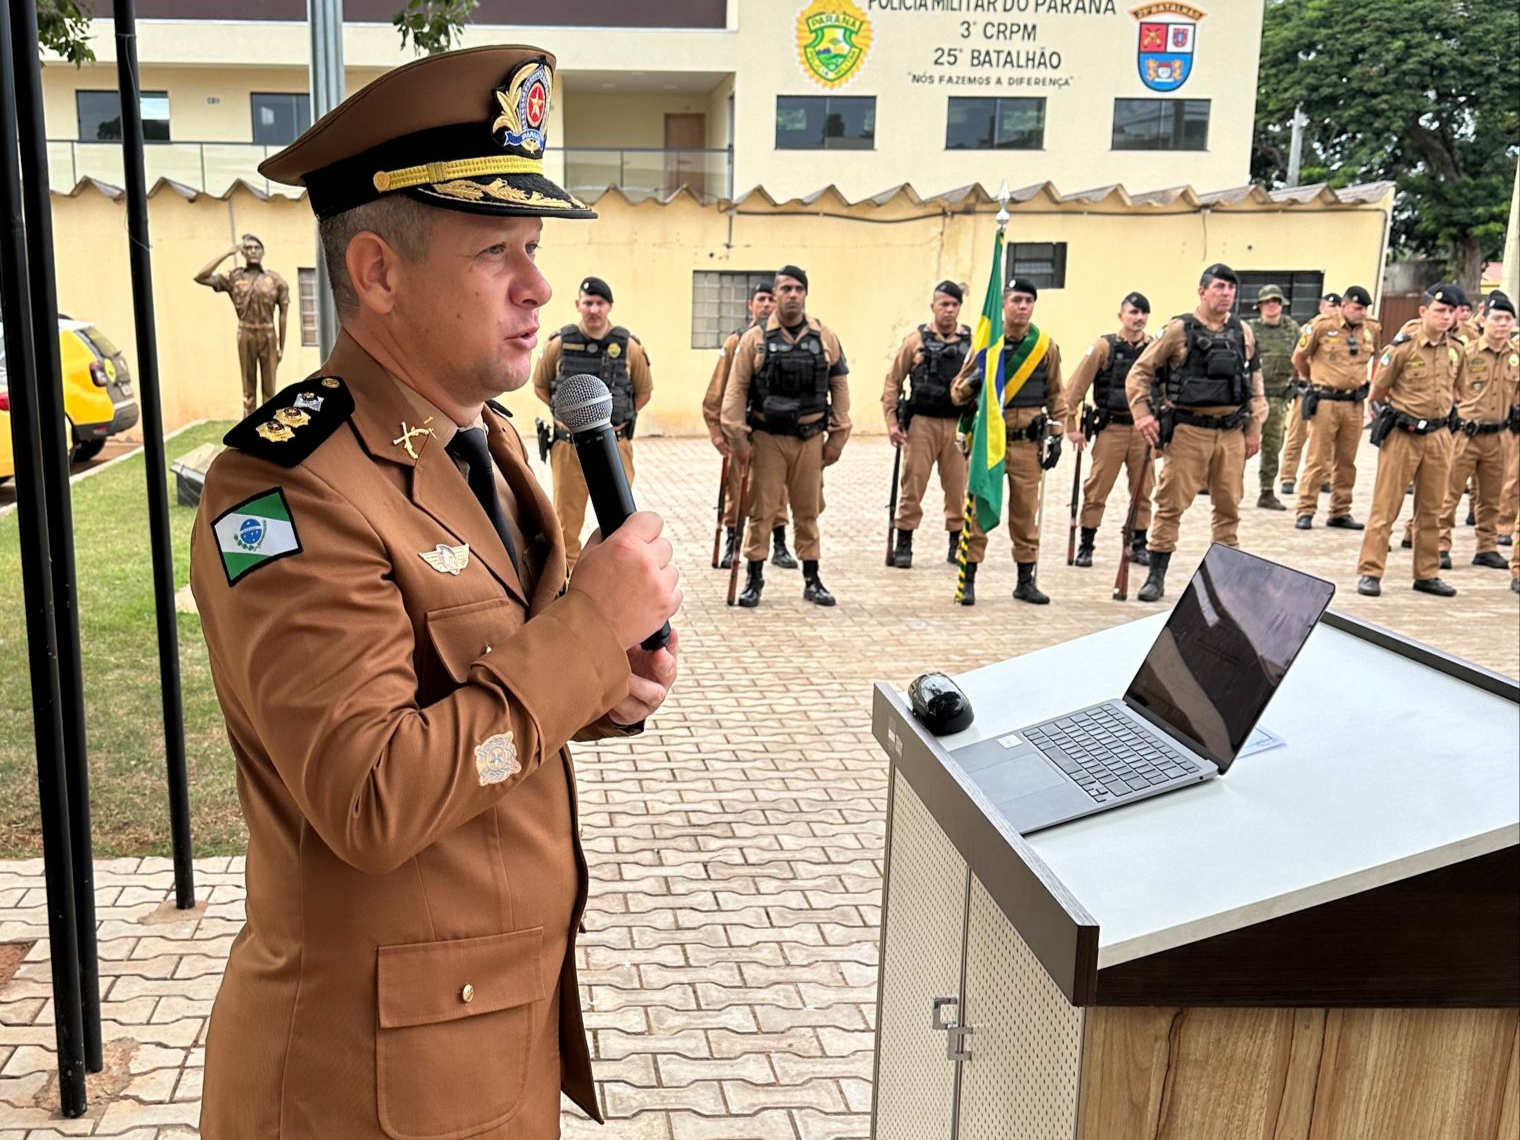 Polícia Militar de Umuarama homenageia patrono da PMPR 